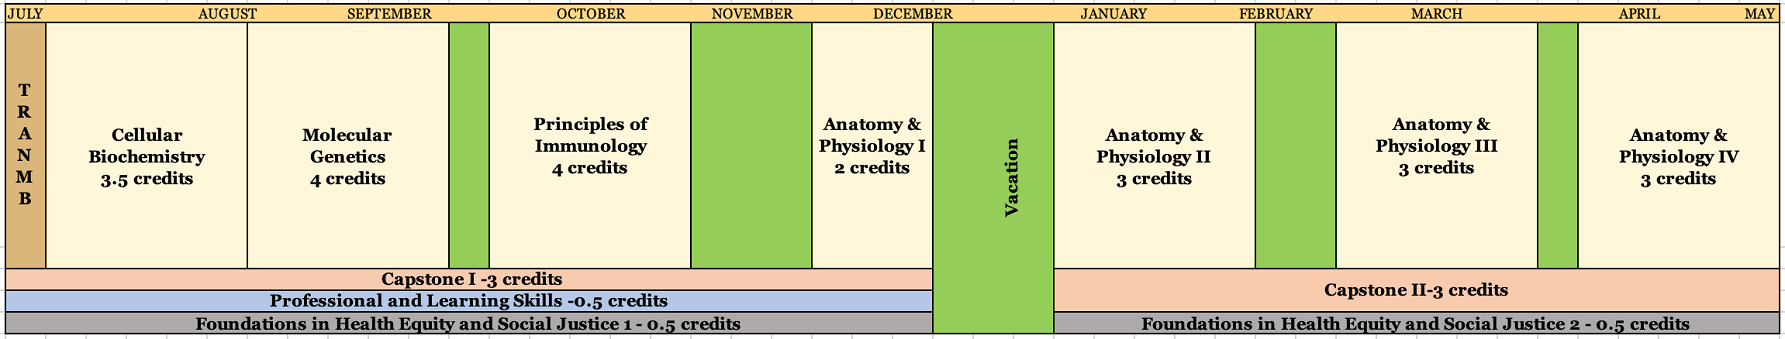 MBS Curriculum Calendar - Large